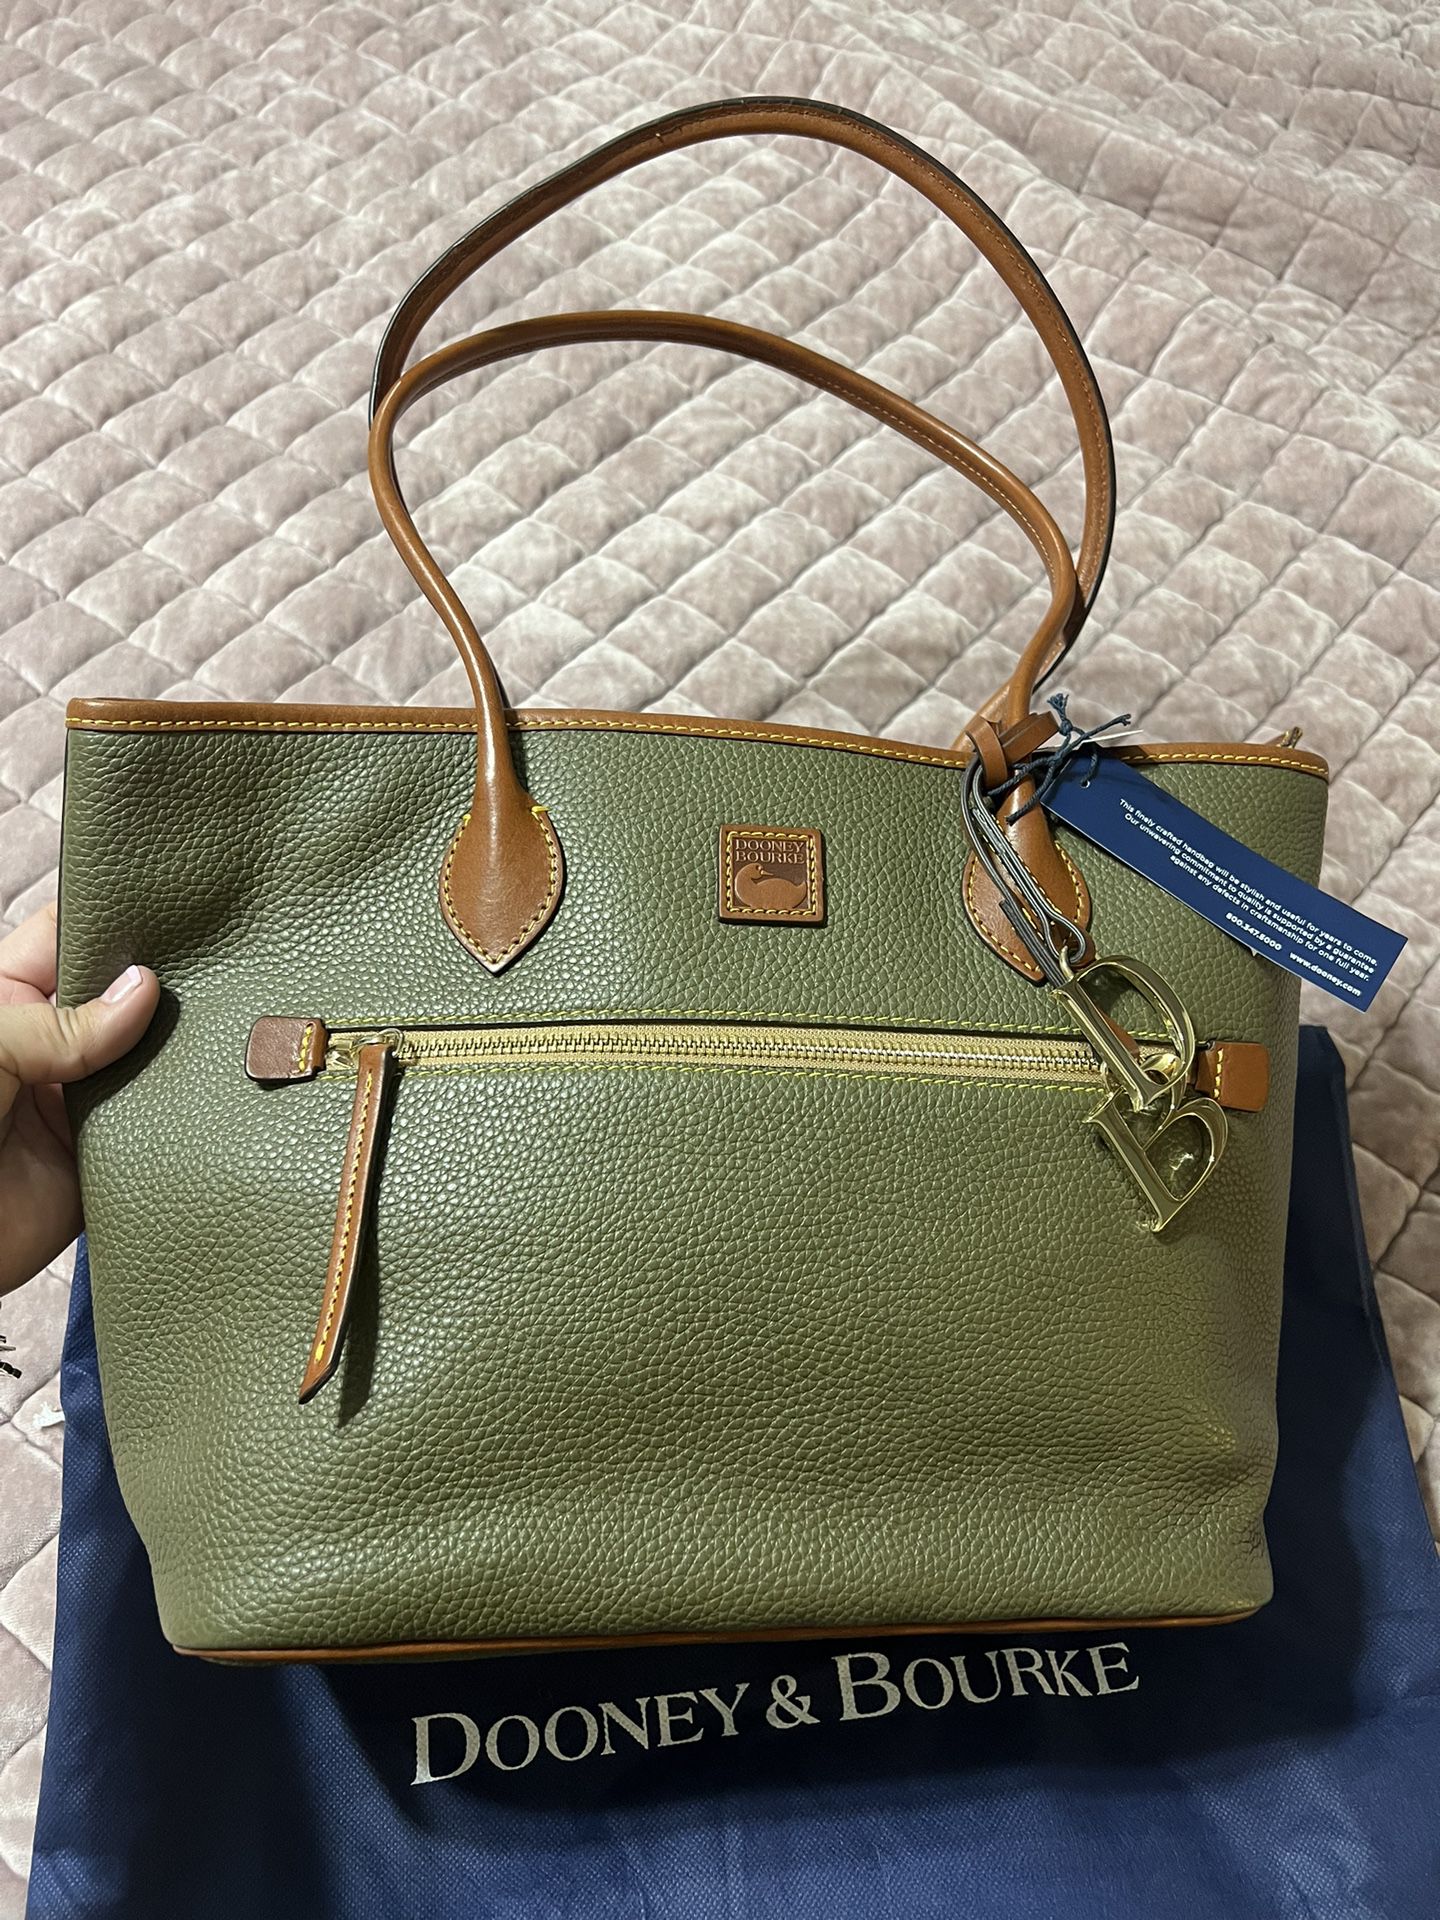 New Dooney & Bourke Handbag 